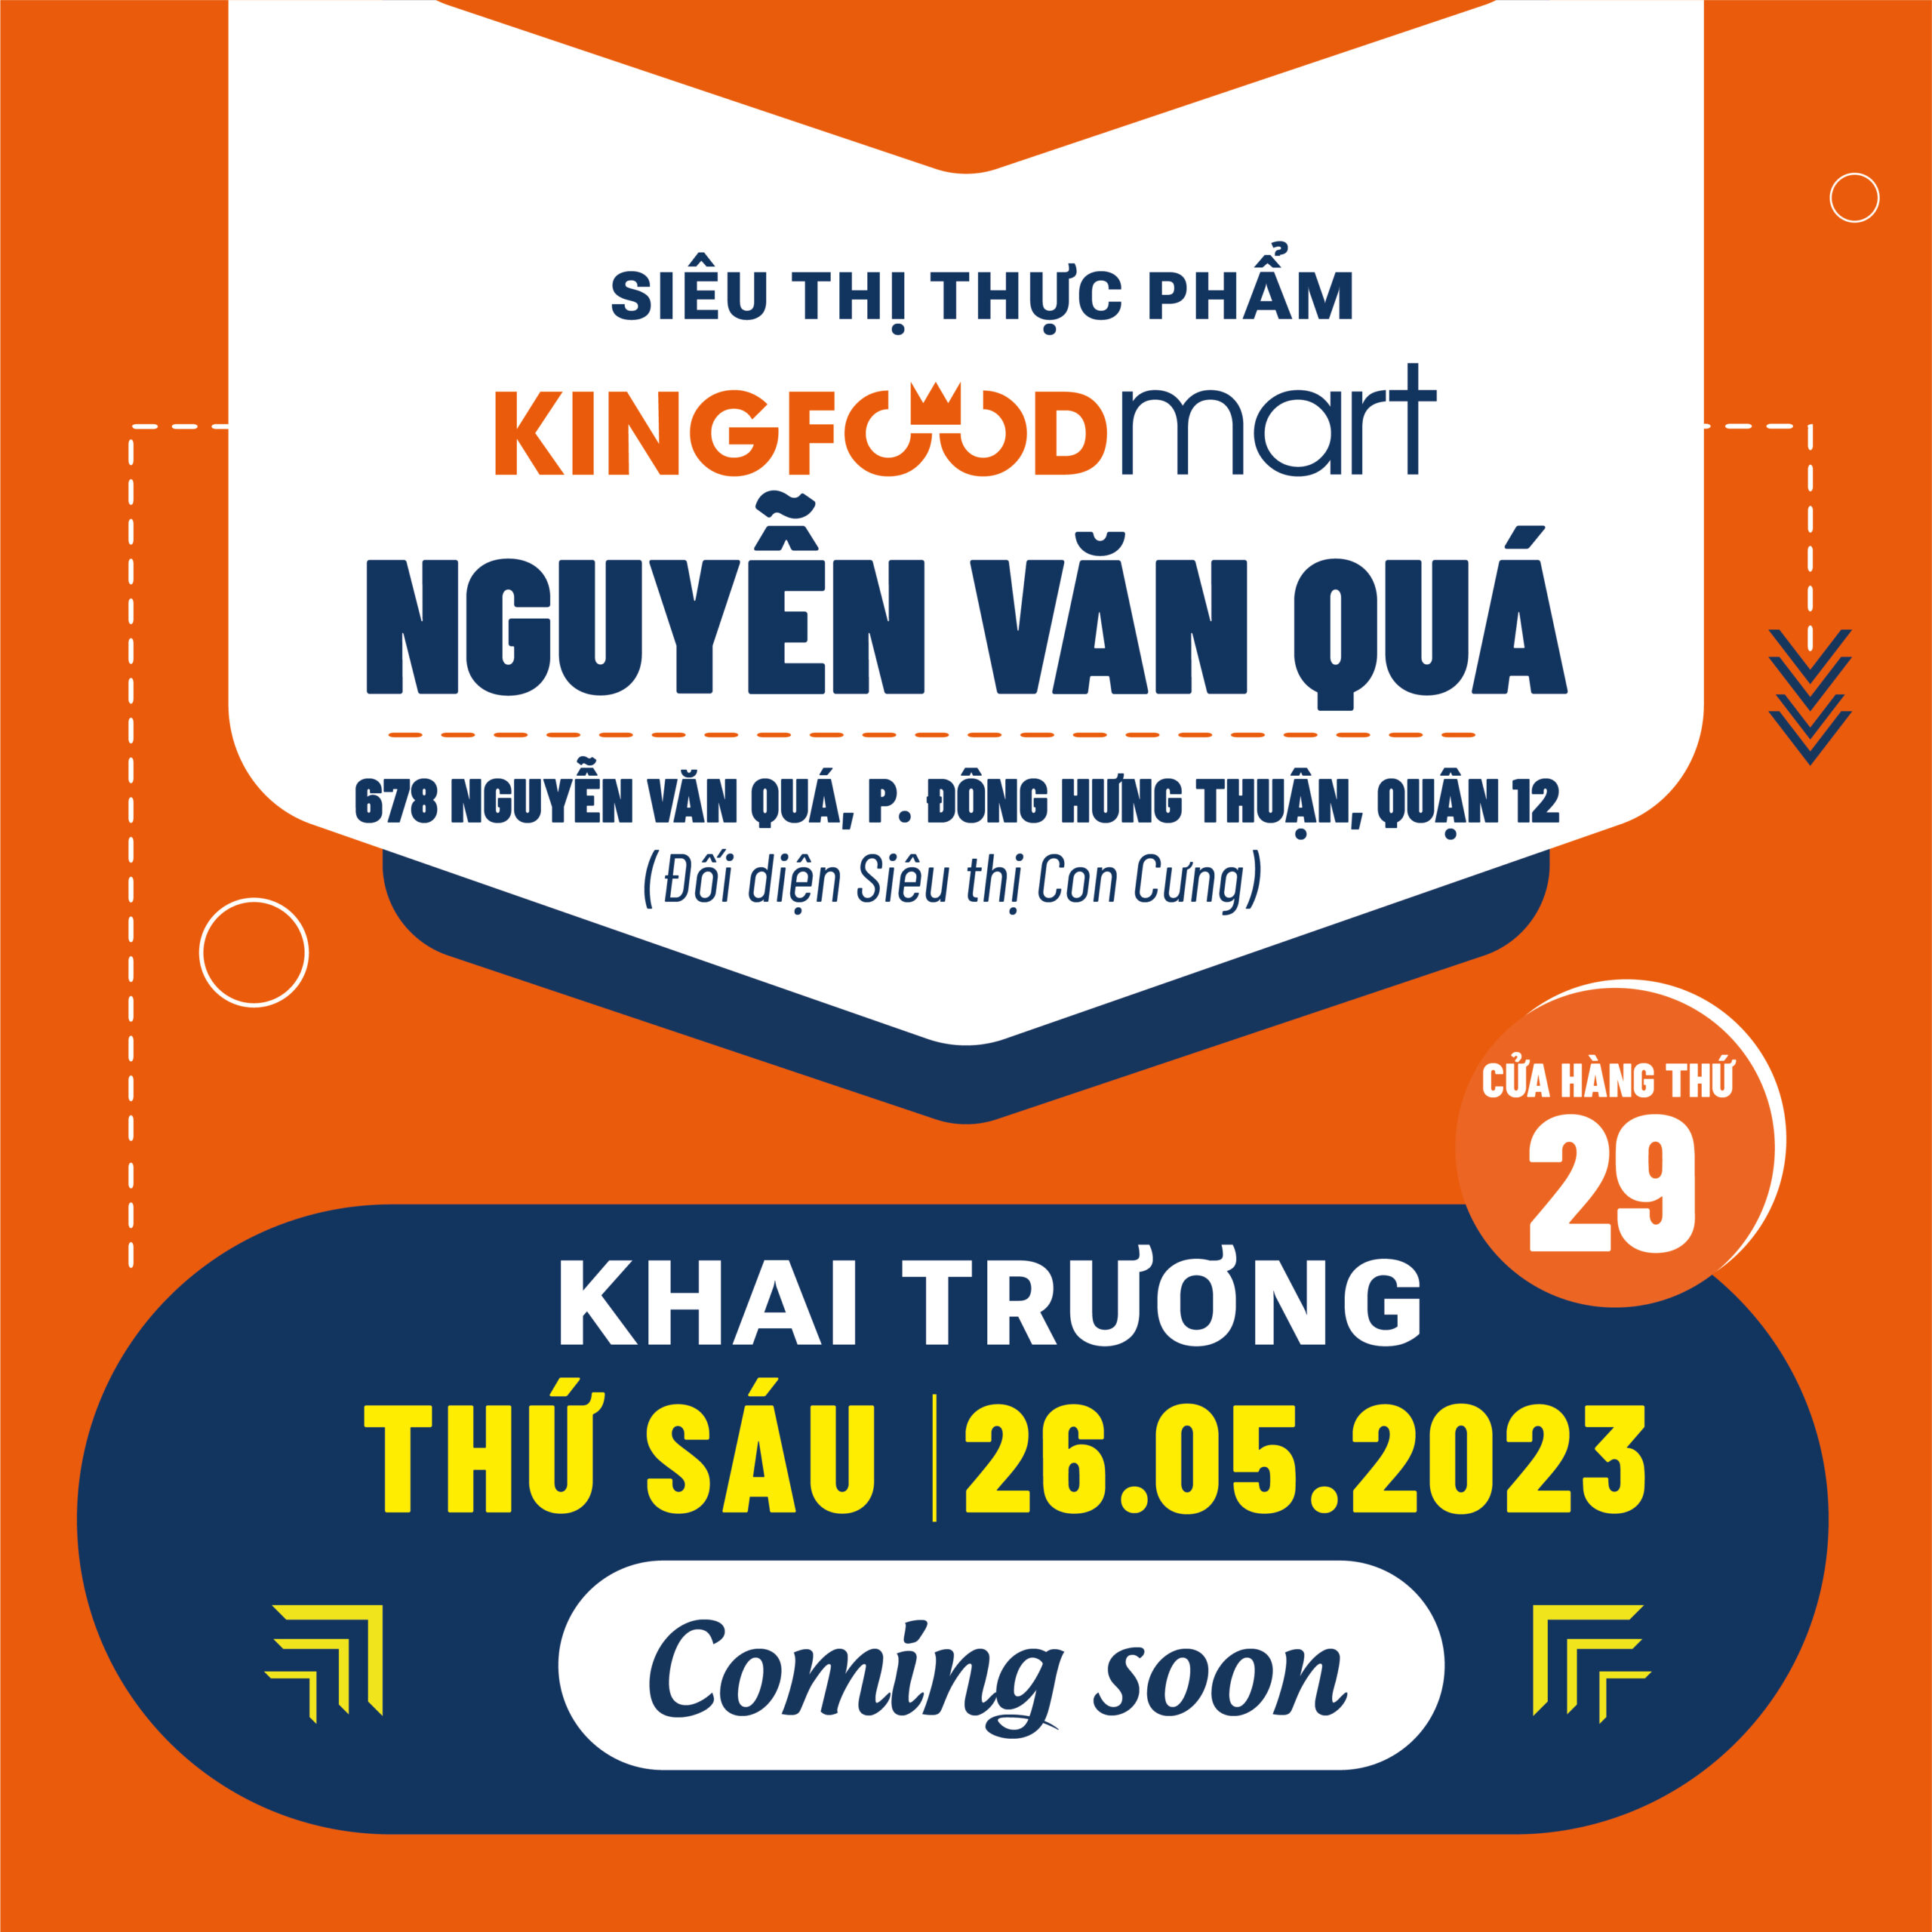 Kingfoodmart Nguyễn Văn Quá Sắp Khai Trương!